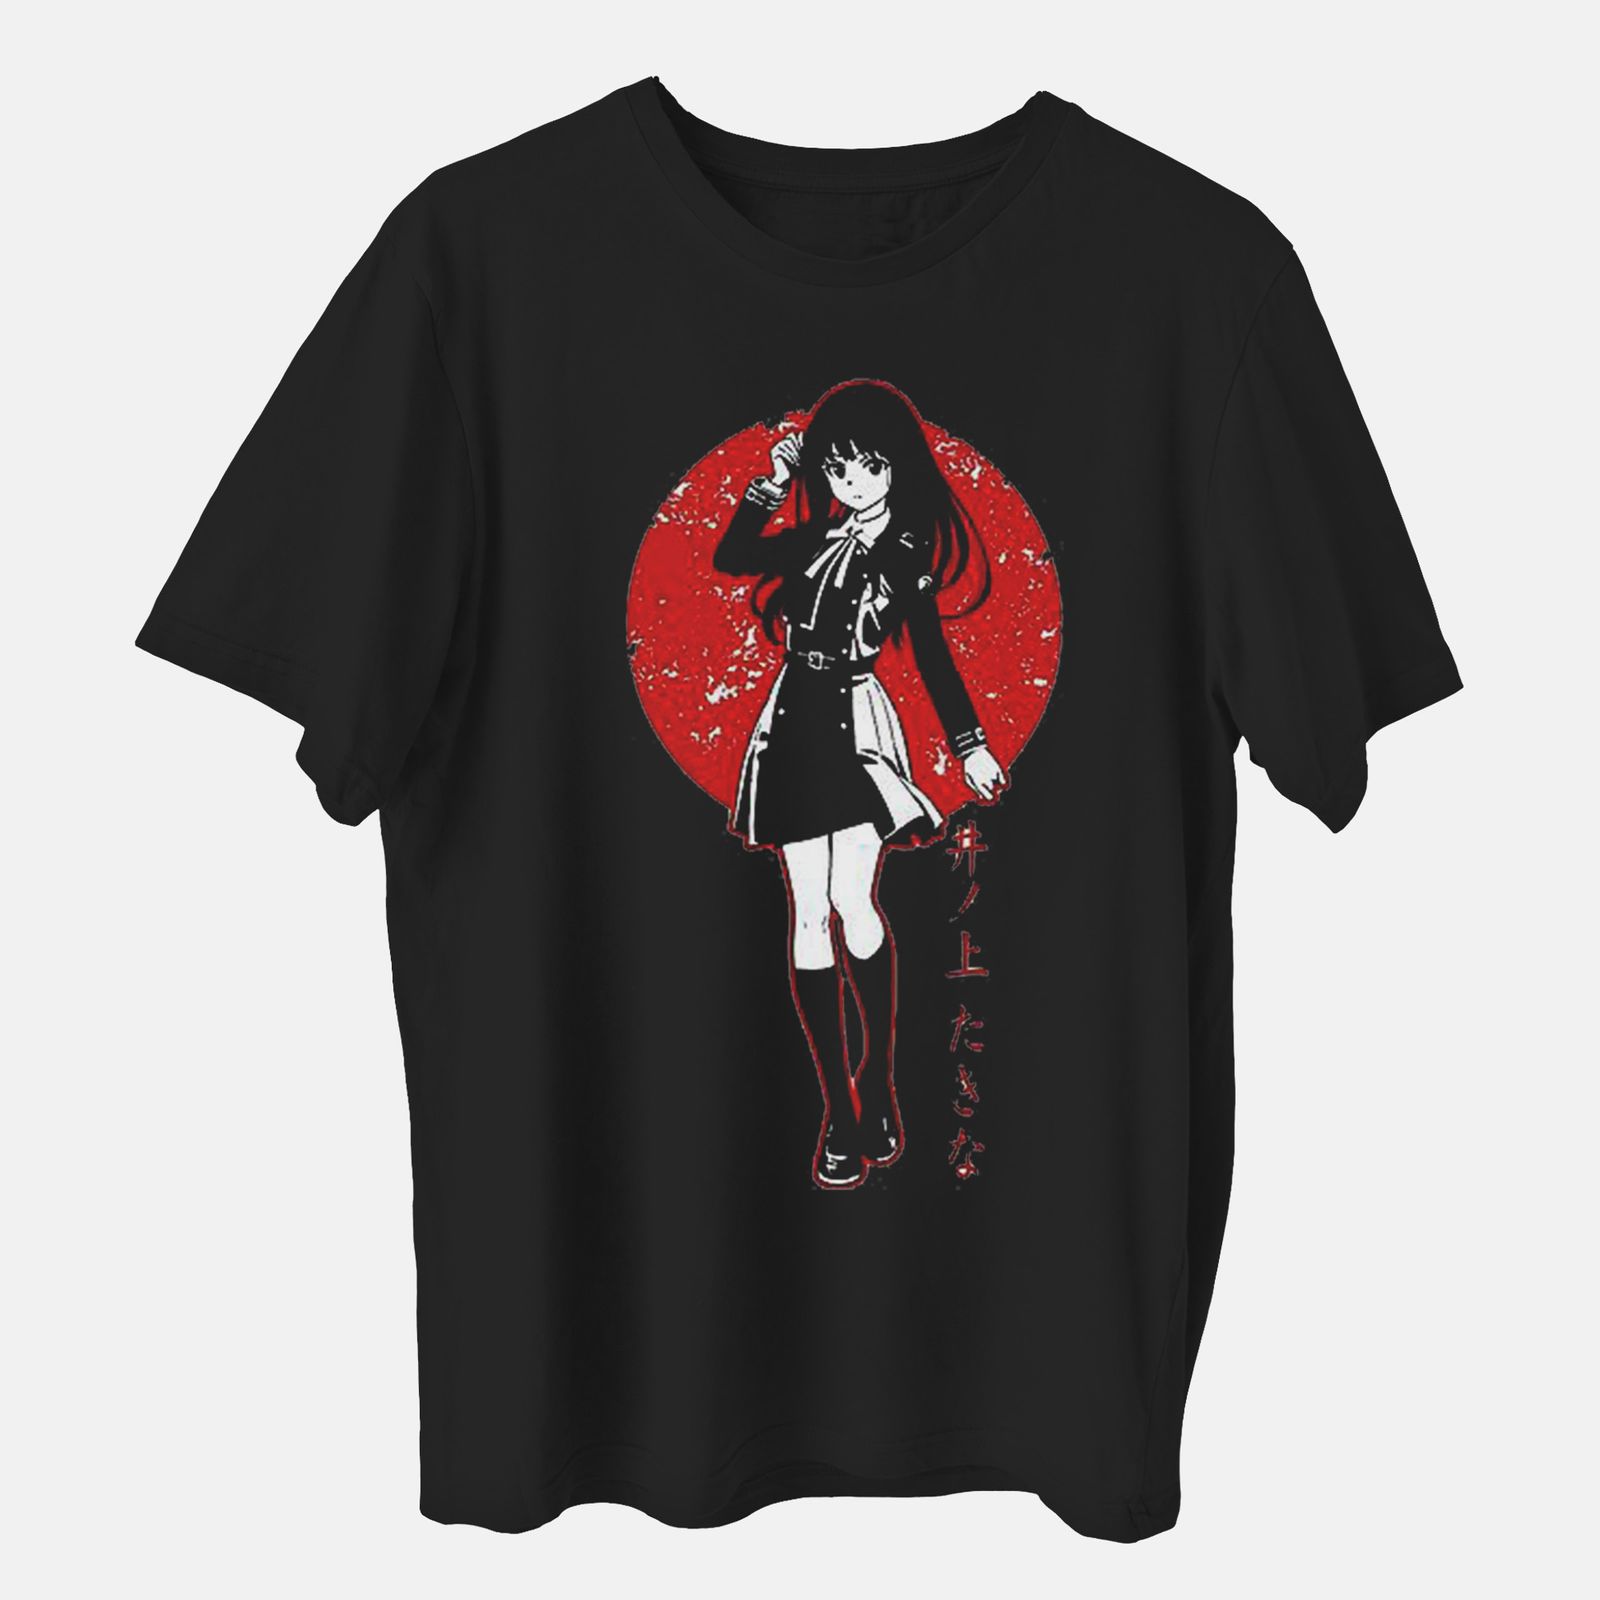 تی شرت آستین کوتاه دخترانه مدل کیوت ژاپنی انیمه ای کد anm302 -  - 1